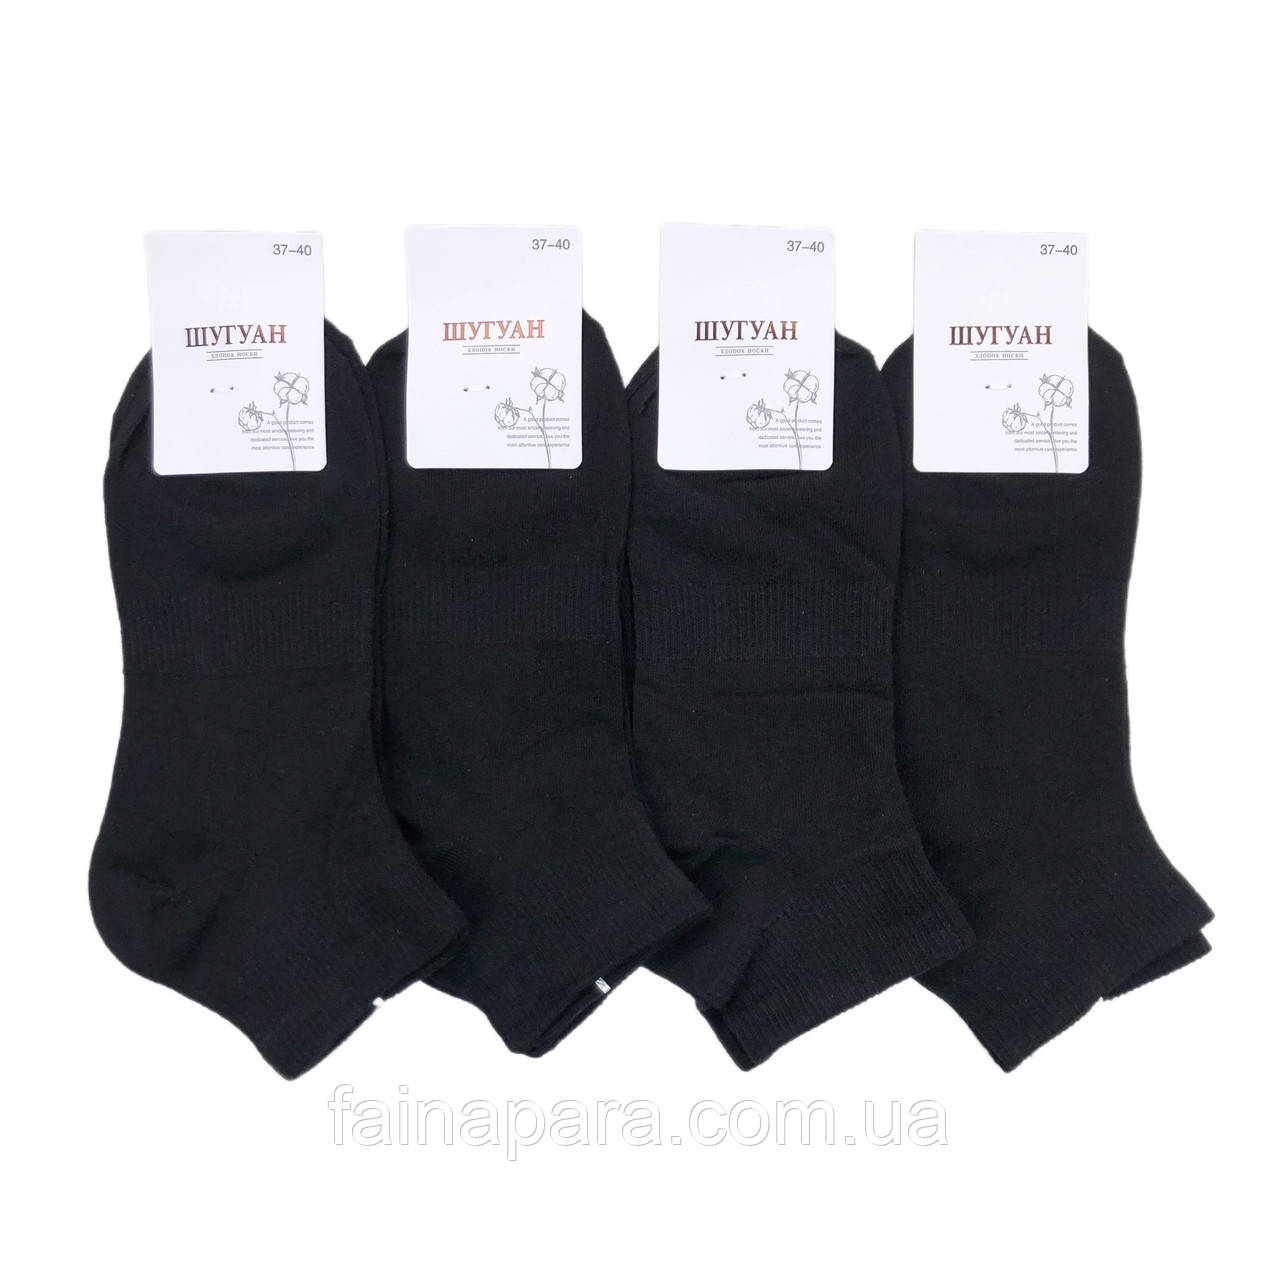 Короткі чорні жіночі шкарпетки бавовна Шугуан